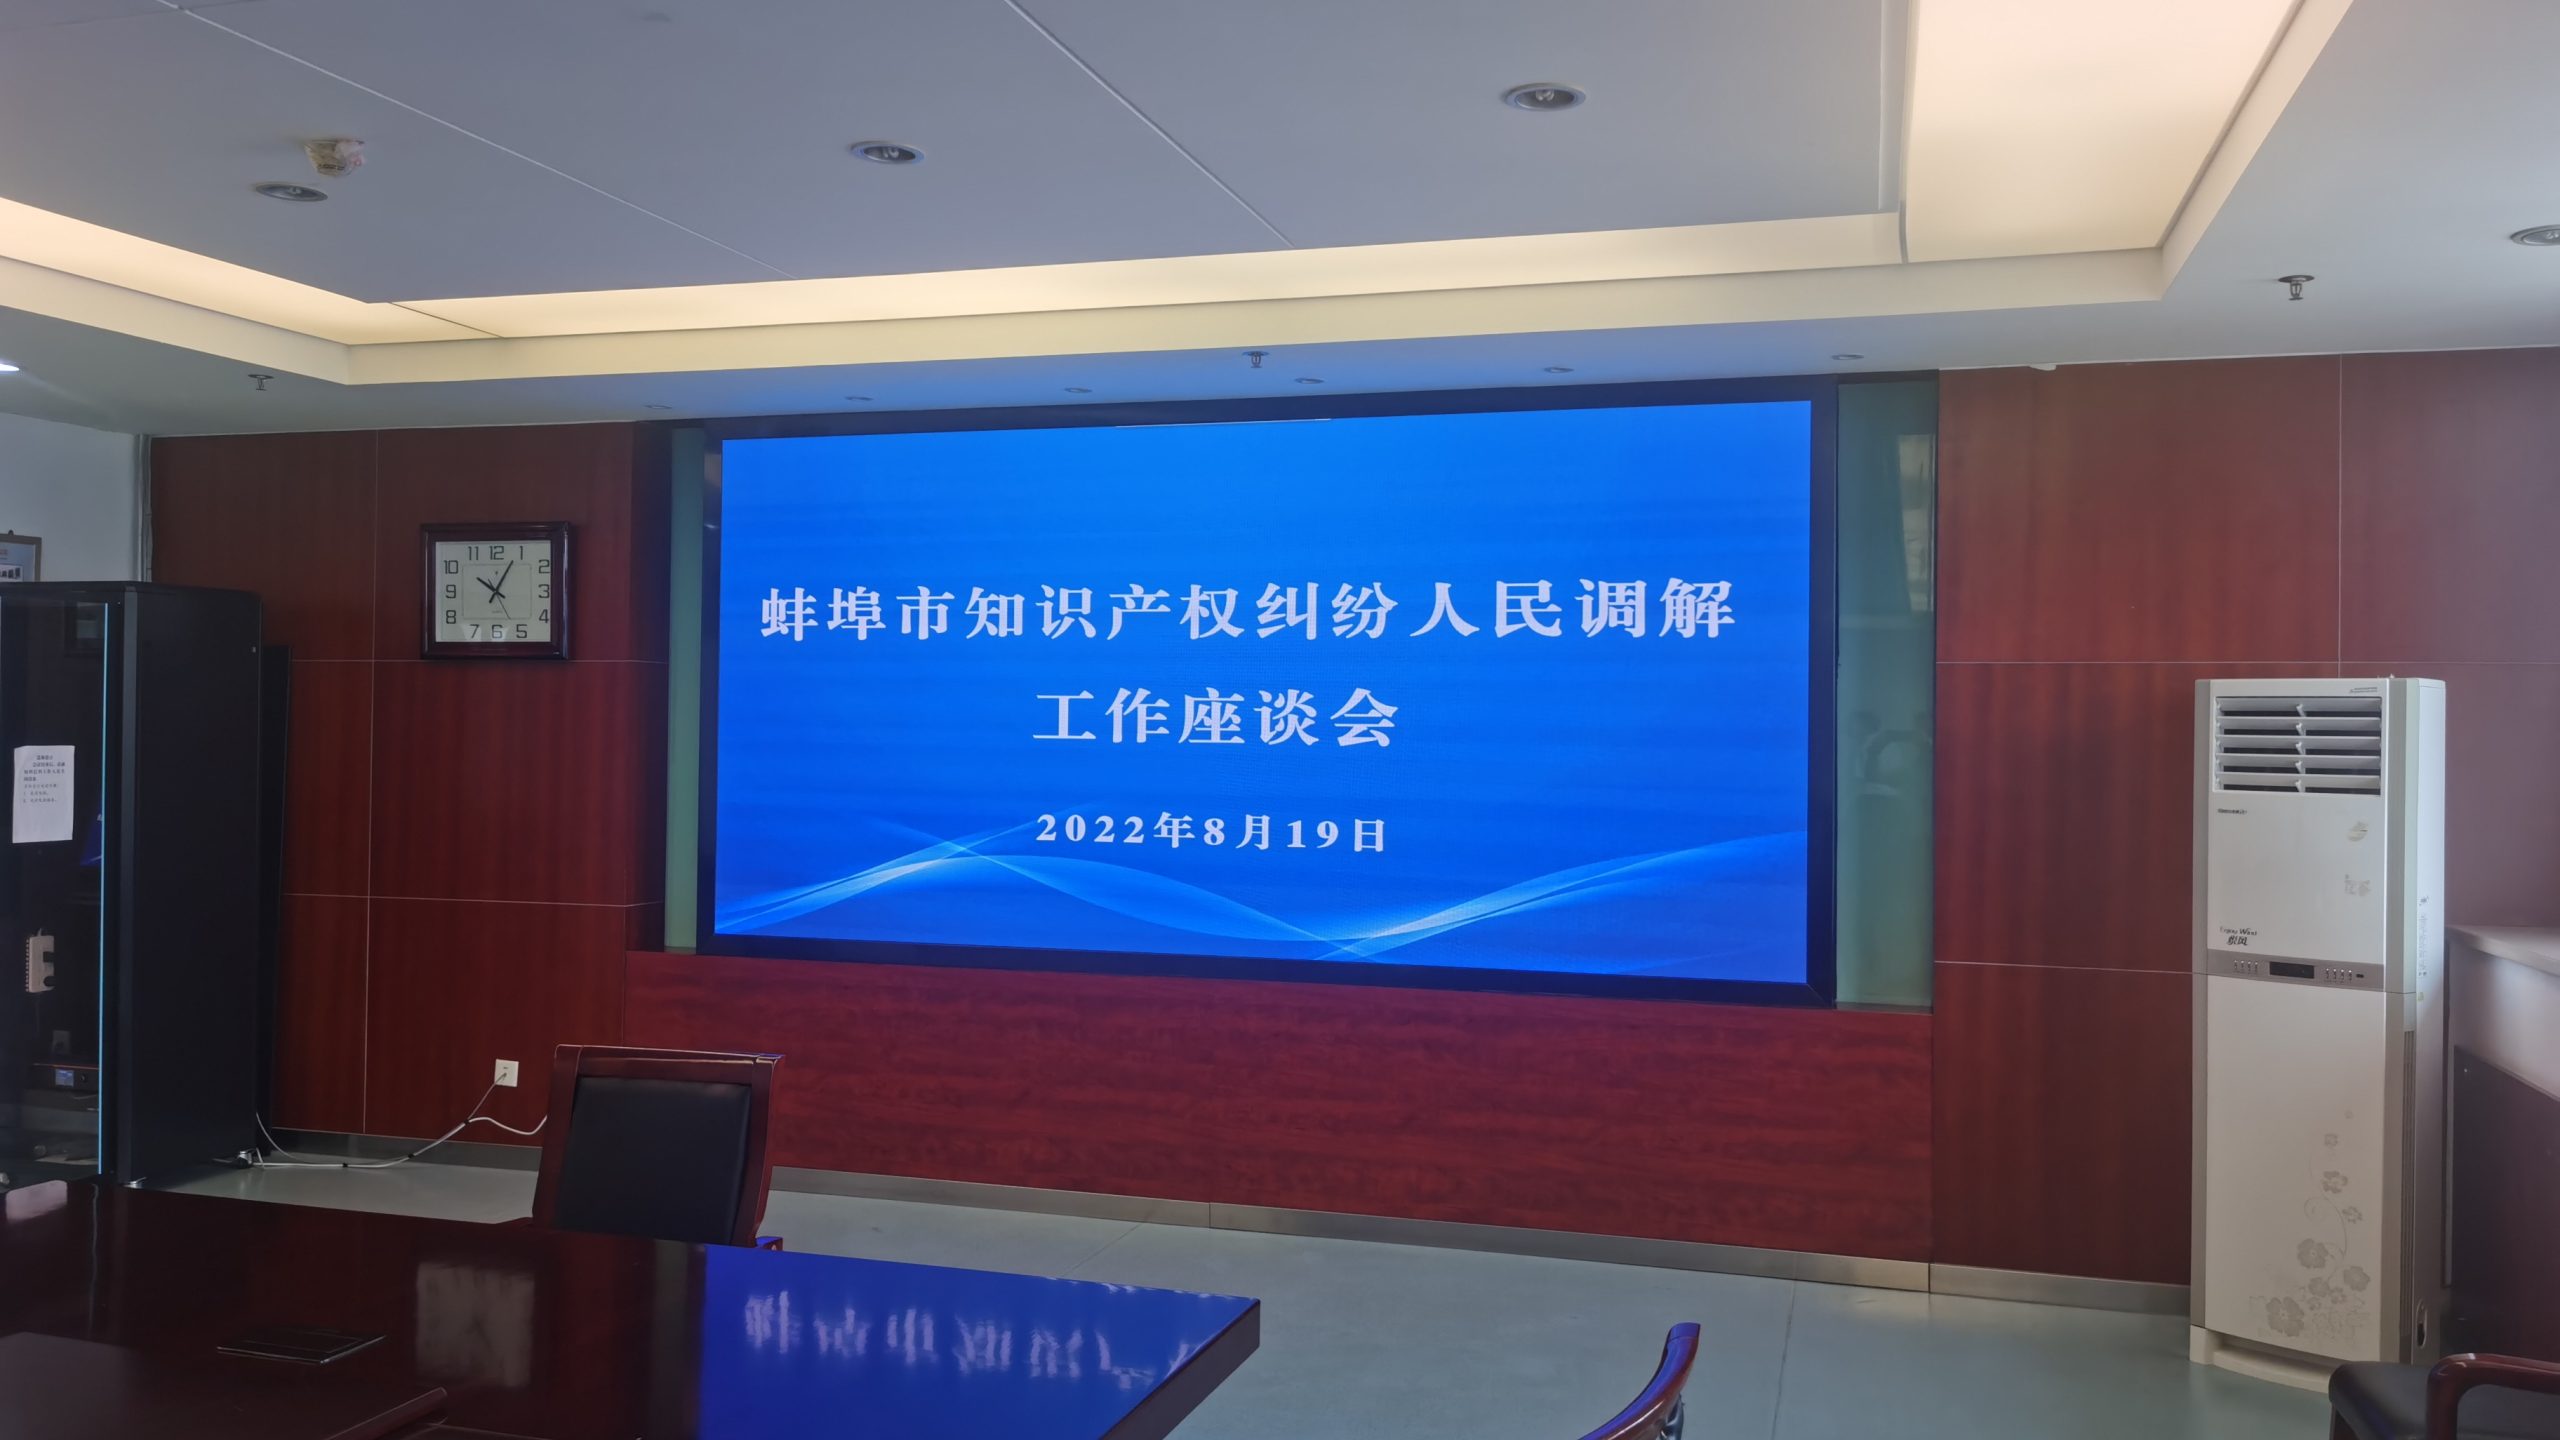 团队律师陪同省知产事业发展中心领导前往蚌埠调研